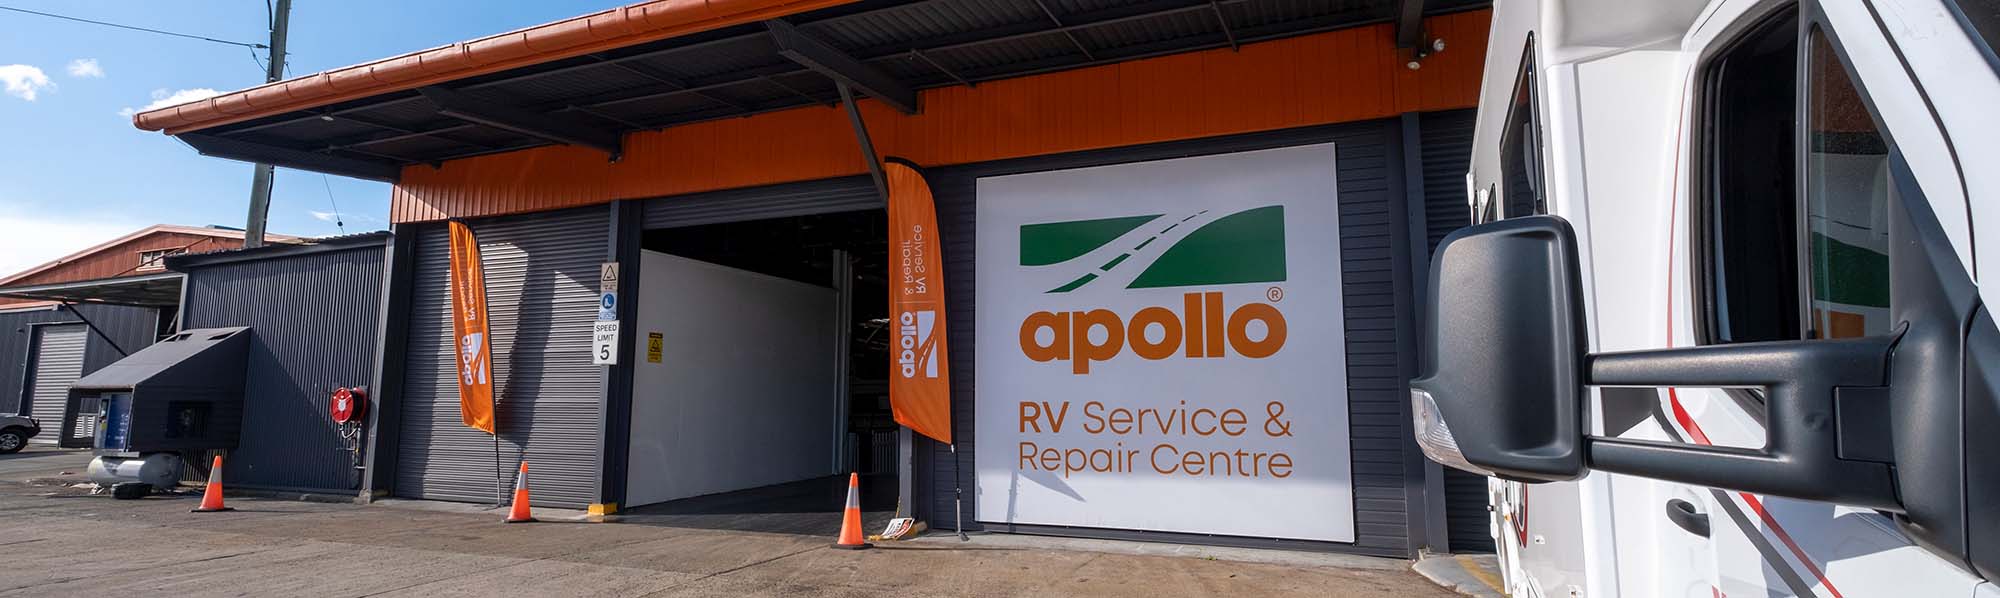 Apollo RV Service Centre Brisbane